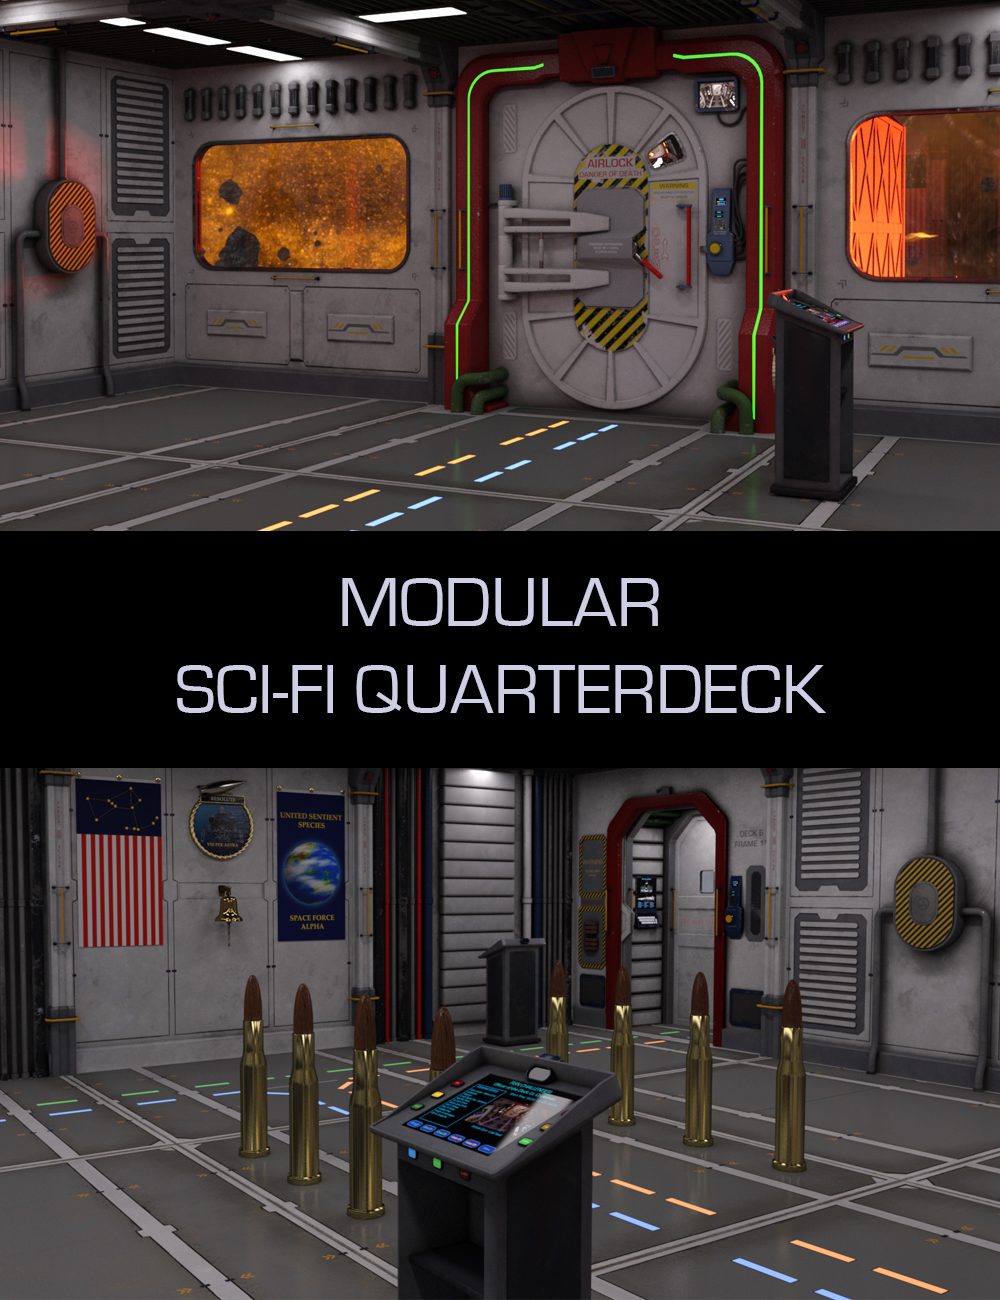 Modular Sci-Fi Quarterdeck by: TangoAlpha, 3D Models by Daz 3D